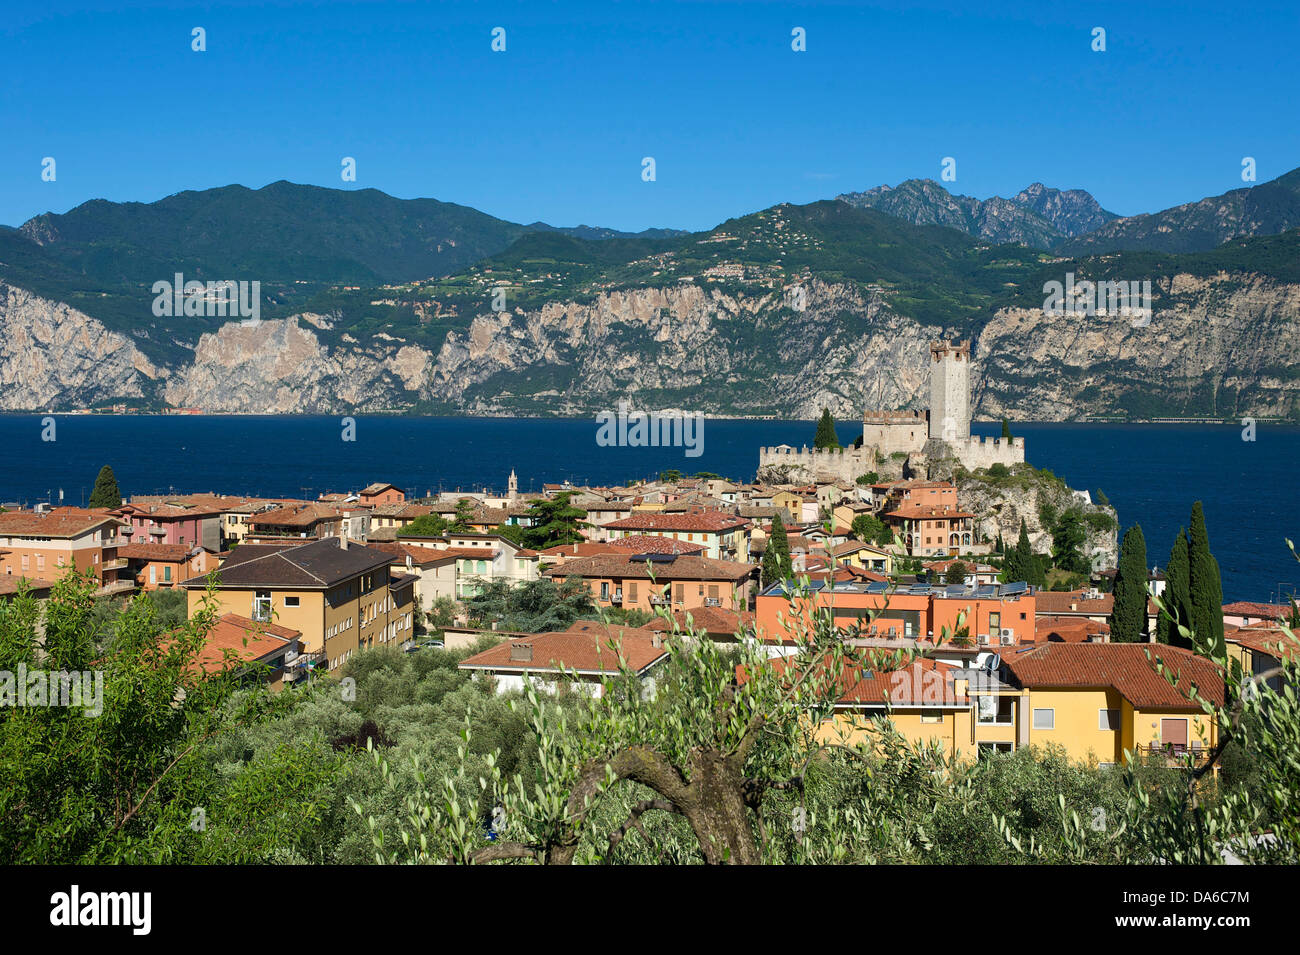 Lake Garda, Italy, Europe, Lago di Garda, Malcesine, mountain landscape, mountain landscapes, mountain, mountains, mountainous, Stock Photo